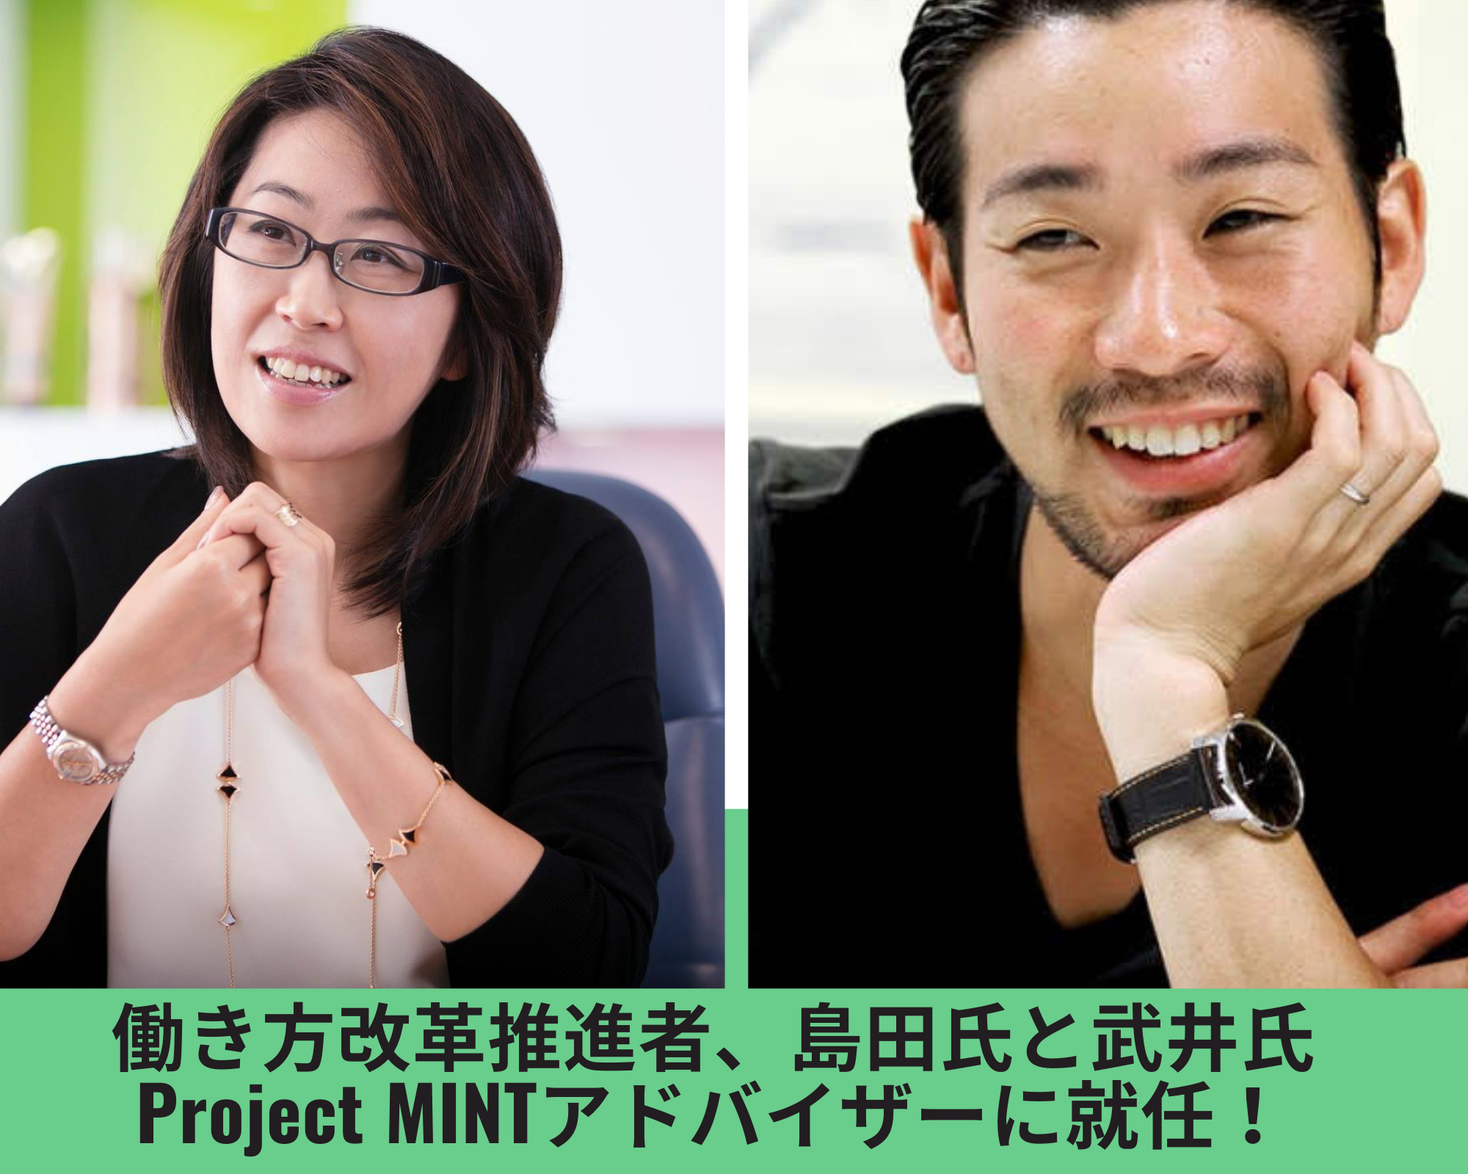 働き方改革推進者、島田由香氏と自律分散型経営の第一人者、武井浩三氏がProject MINTのアドバイザーに就任